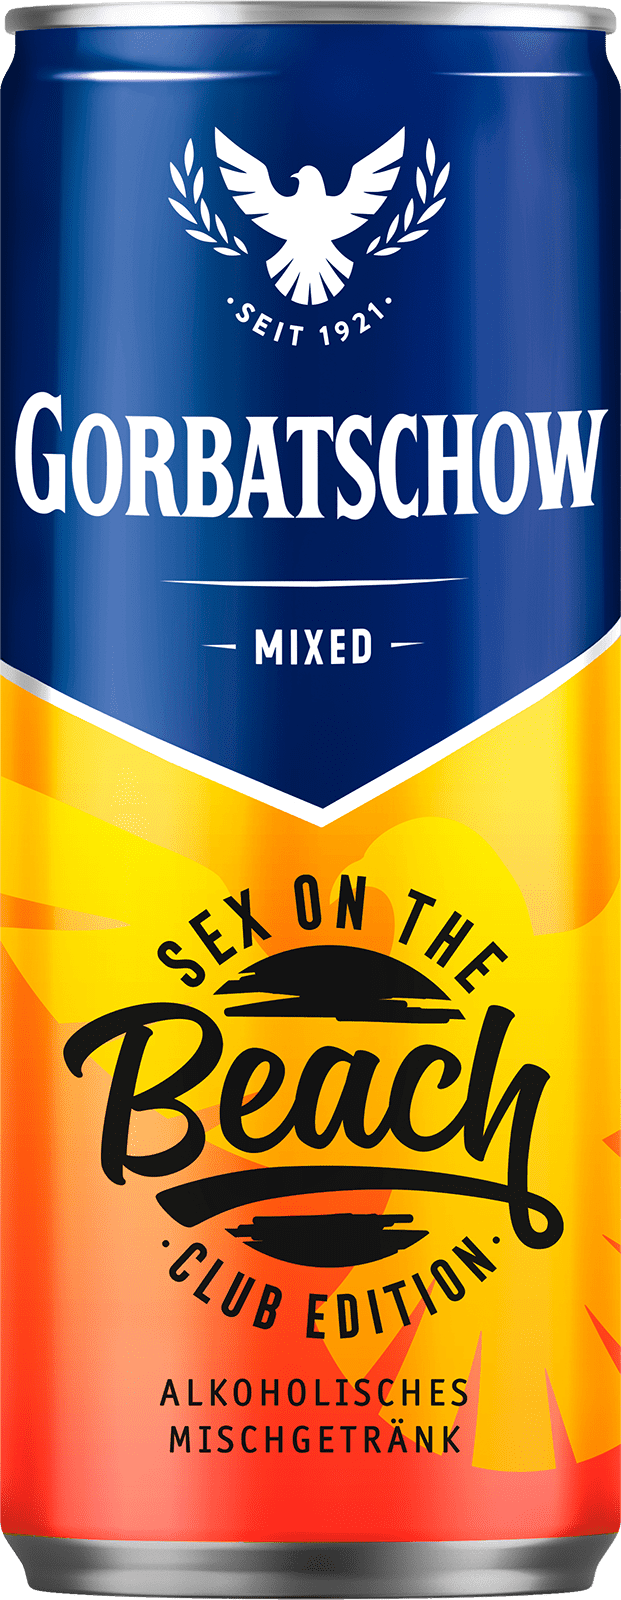 Gorbatschow Sex on the Beach (1 x 0.33 l)